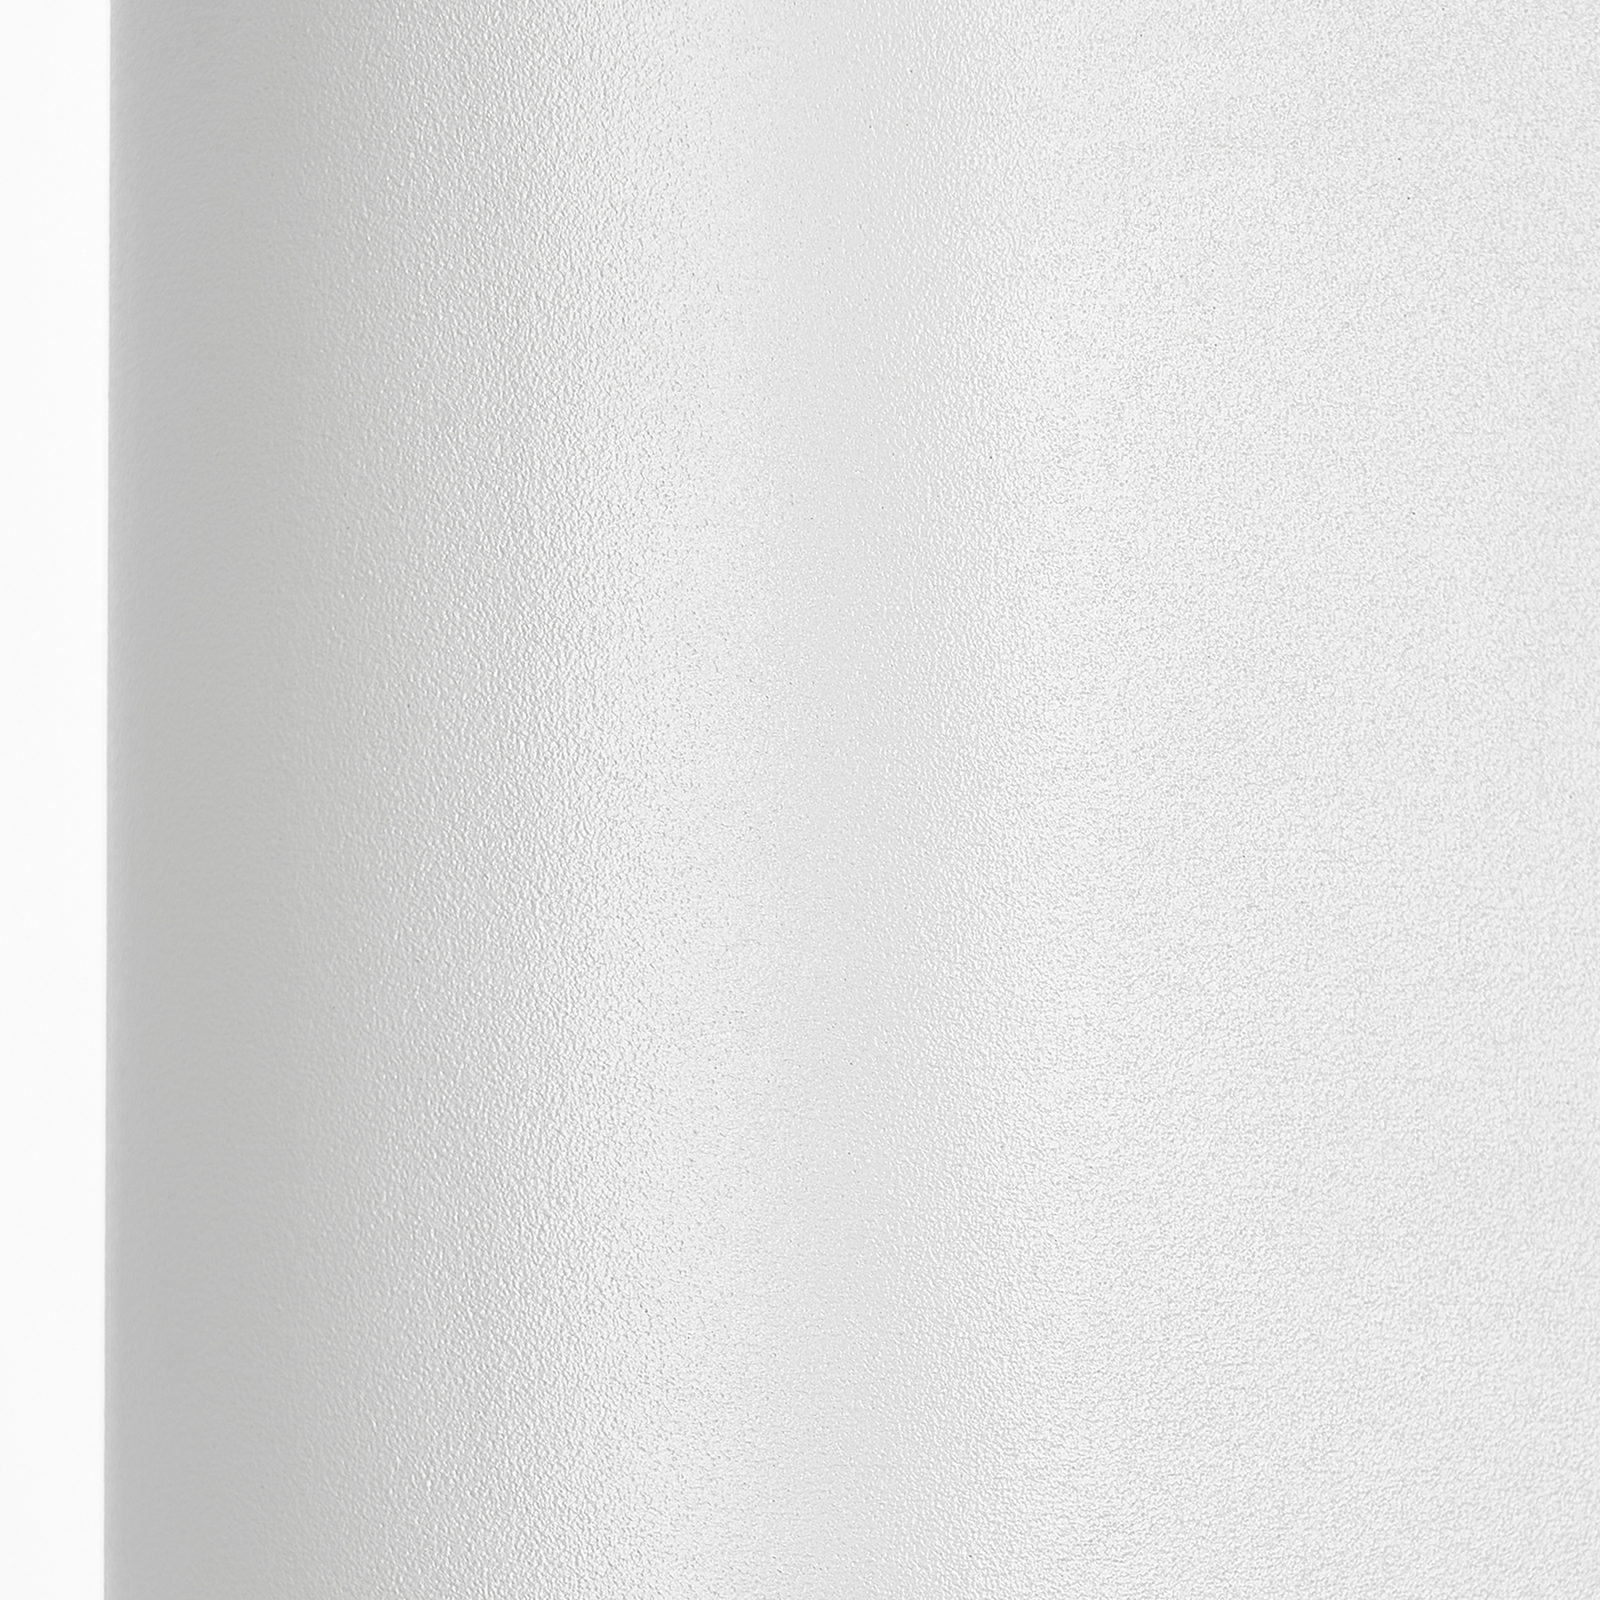 Prios zunanja stenska svetilka Tetje, bela, okrogla, 16 cm